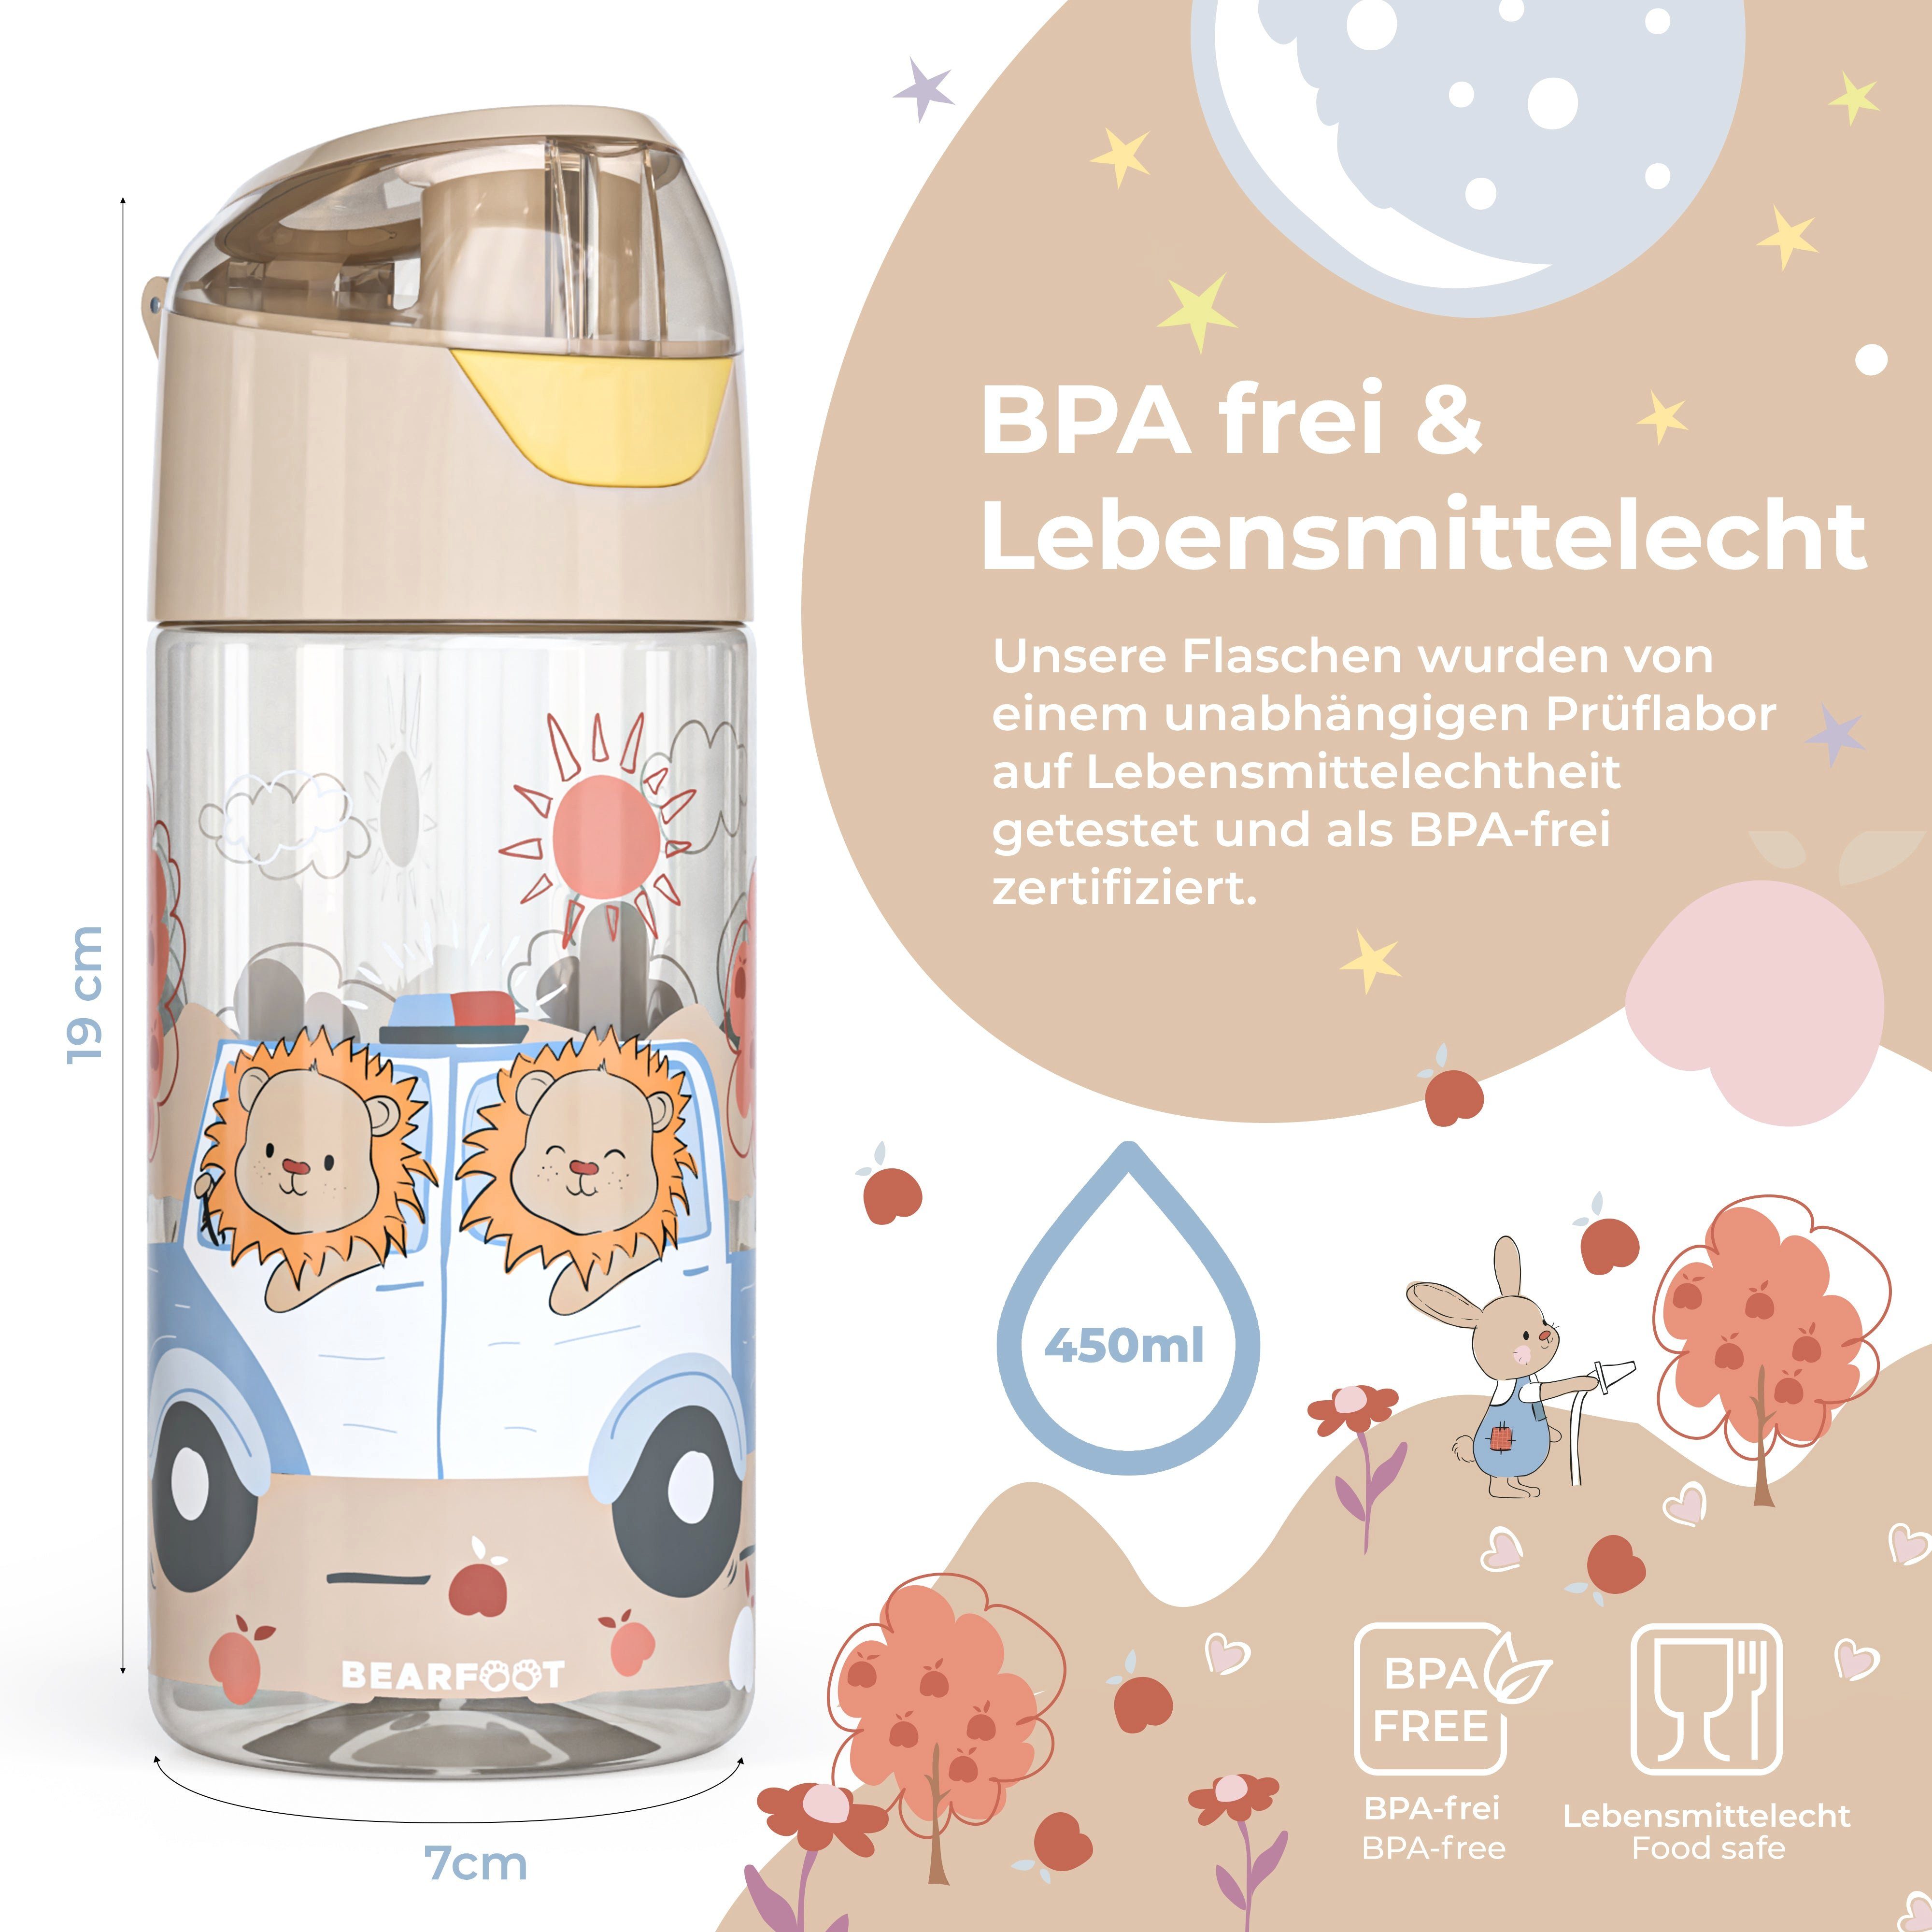 Löwen Kinder, Trinkflasche PolizeiLöwen-braun Polizei - leichte BEARFOOT Trinkflasche Wasserflasche